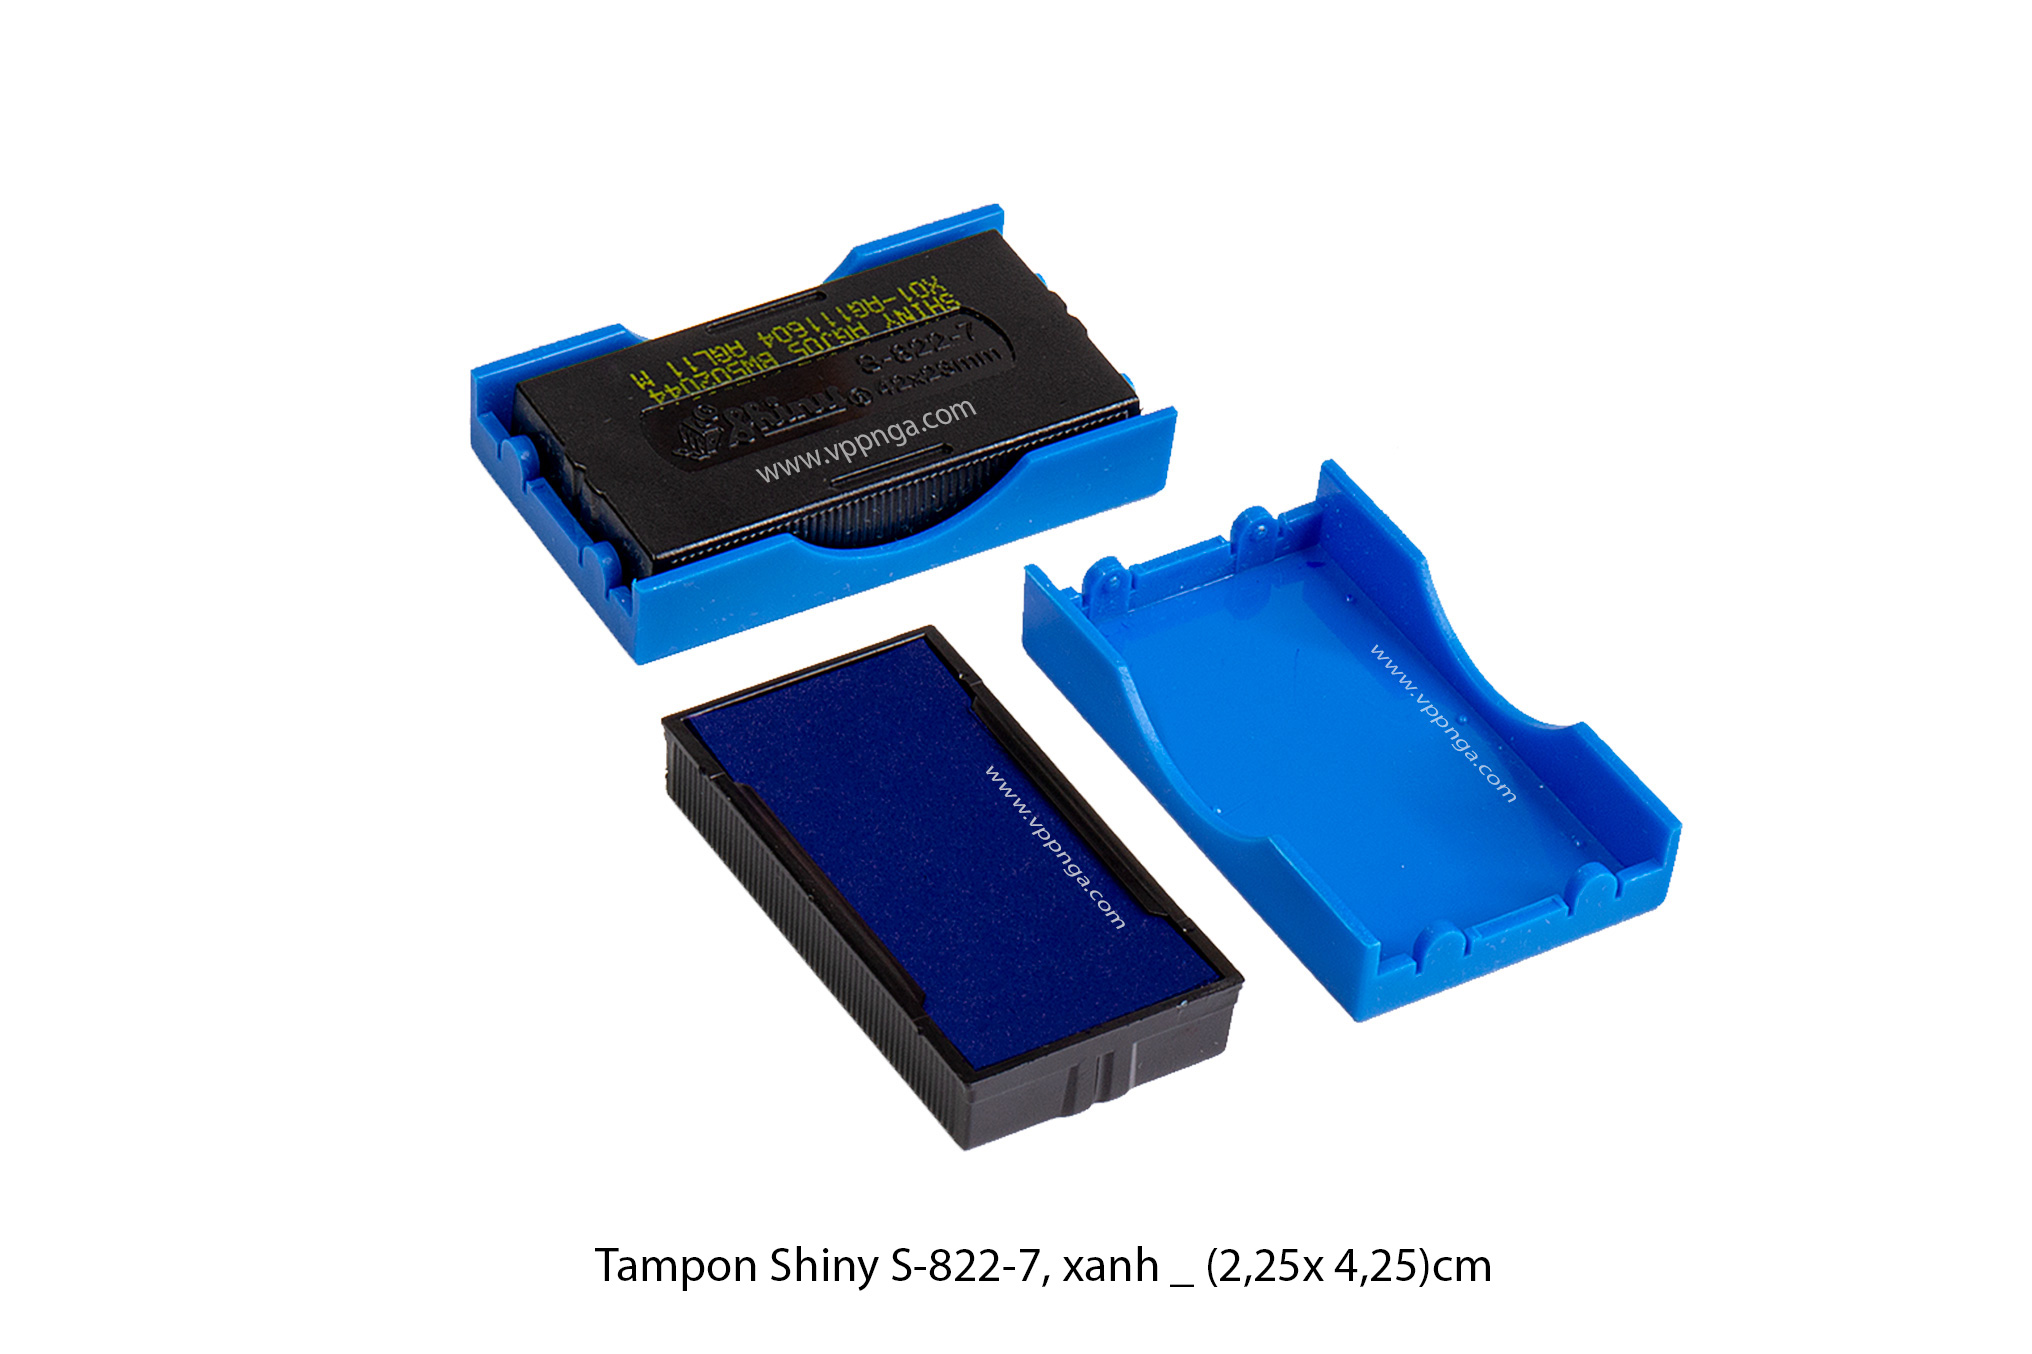 Tampon Shiny S822-7 Xanh